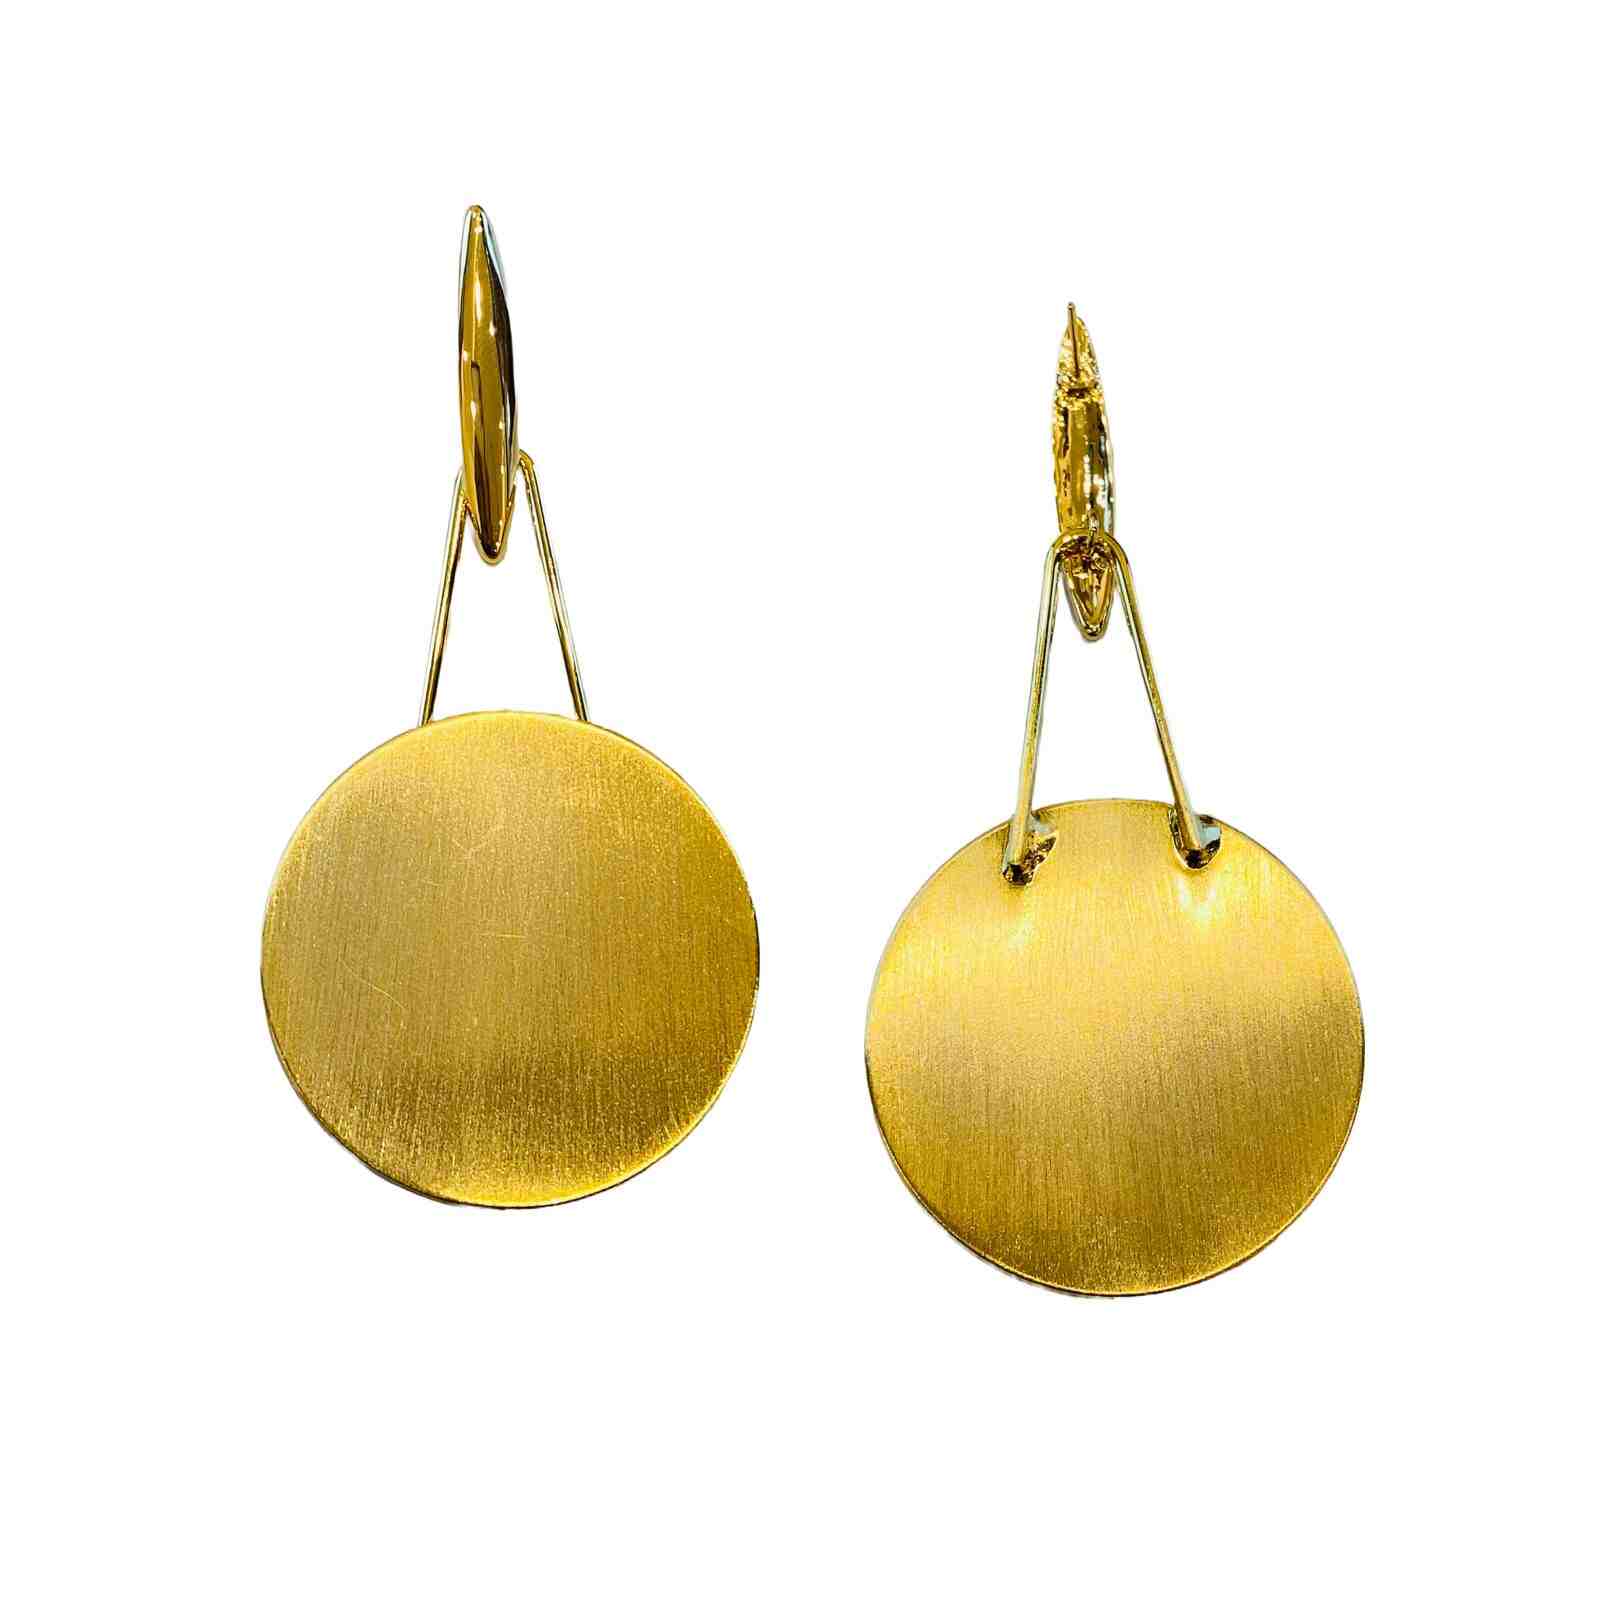 Disc Earrings | Drop Type Earrings | Gold Colour Jewellery